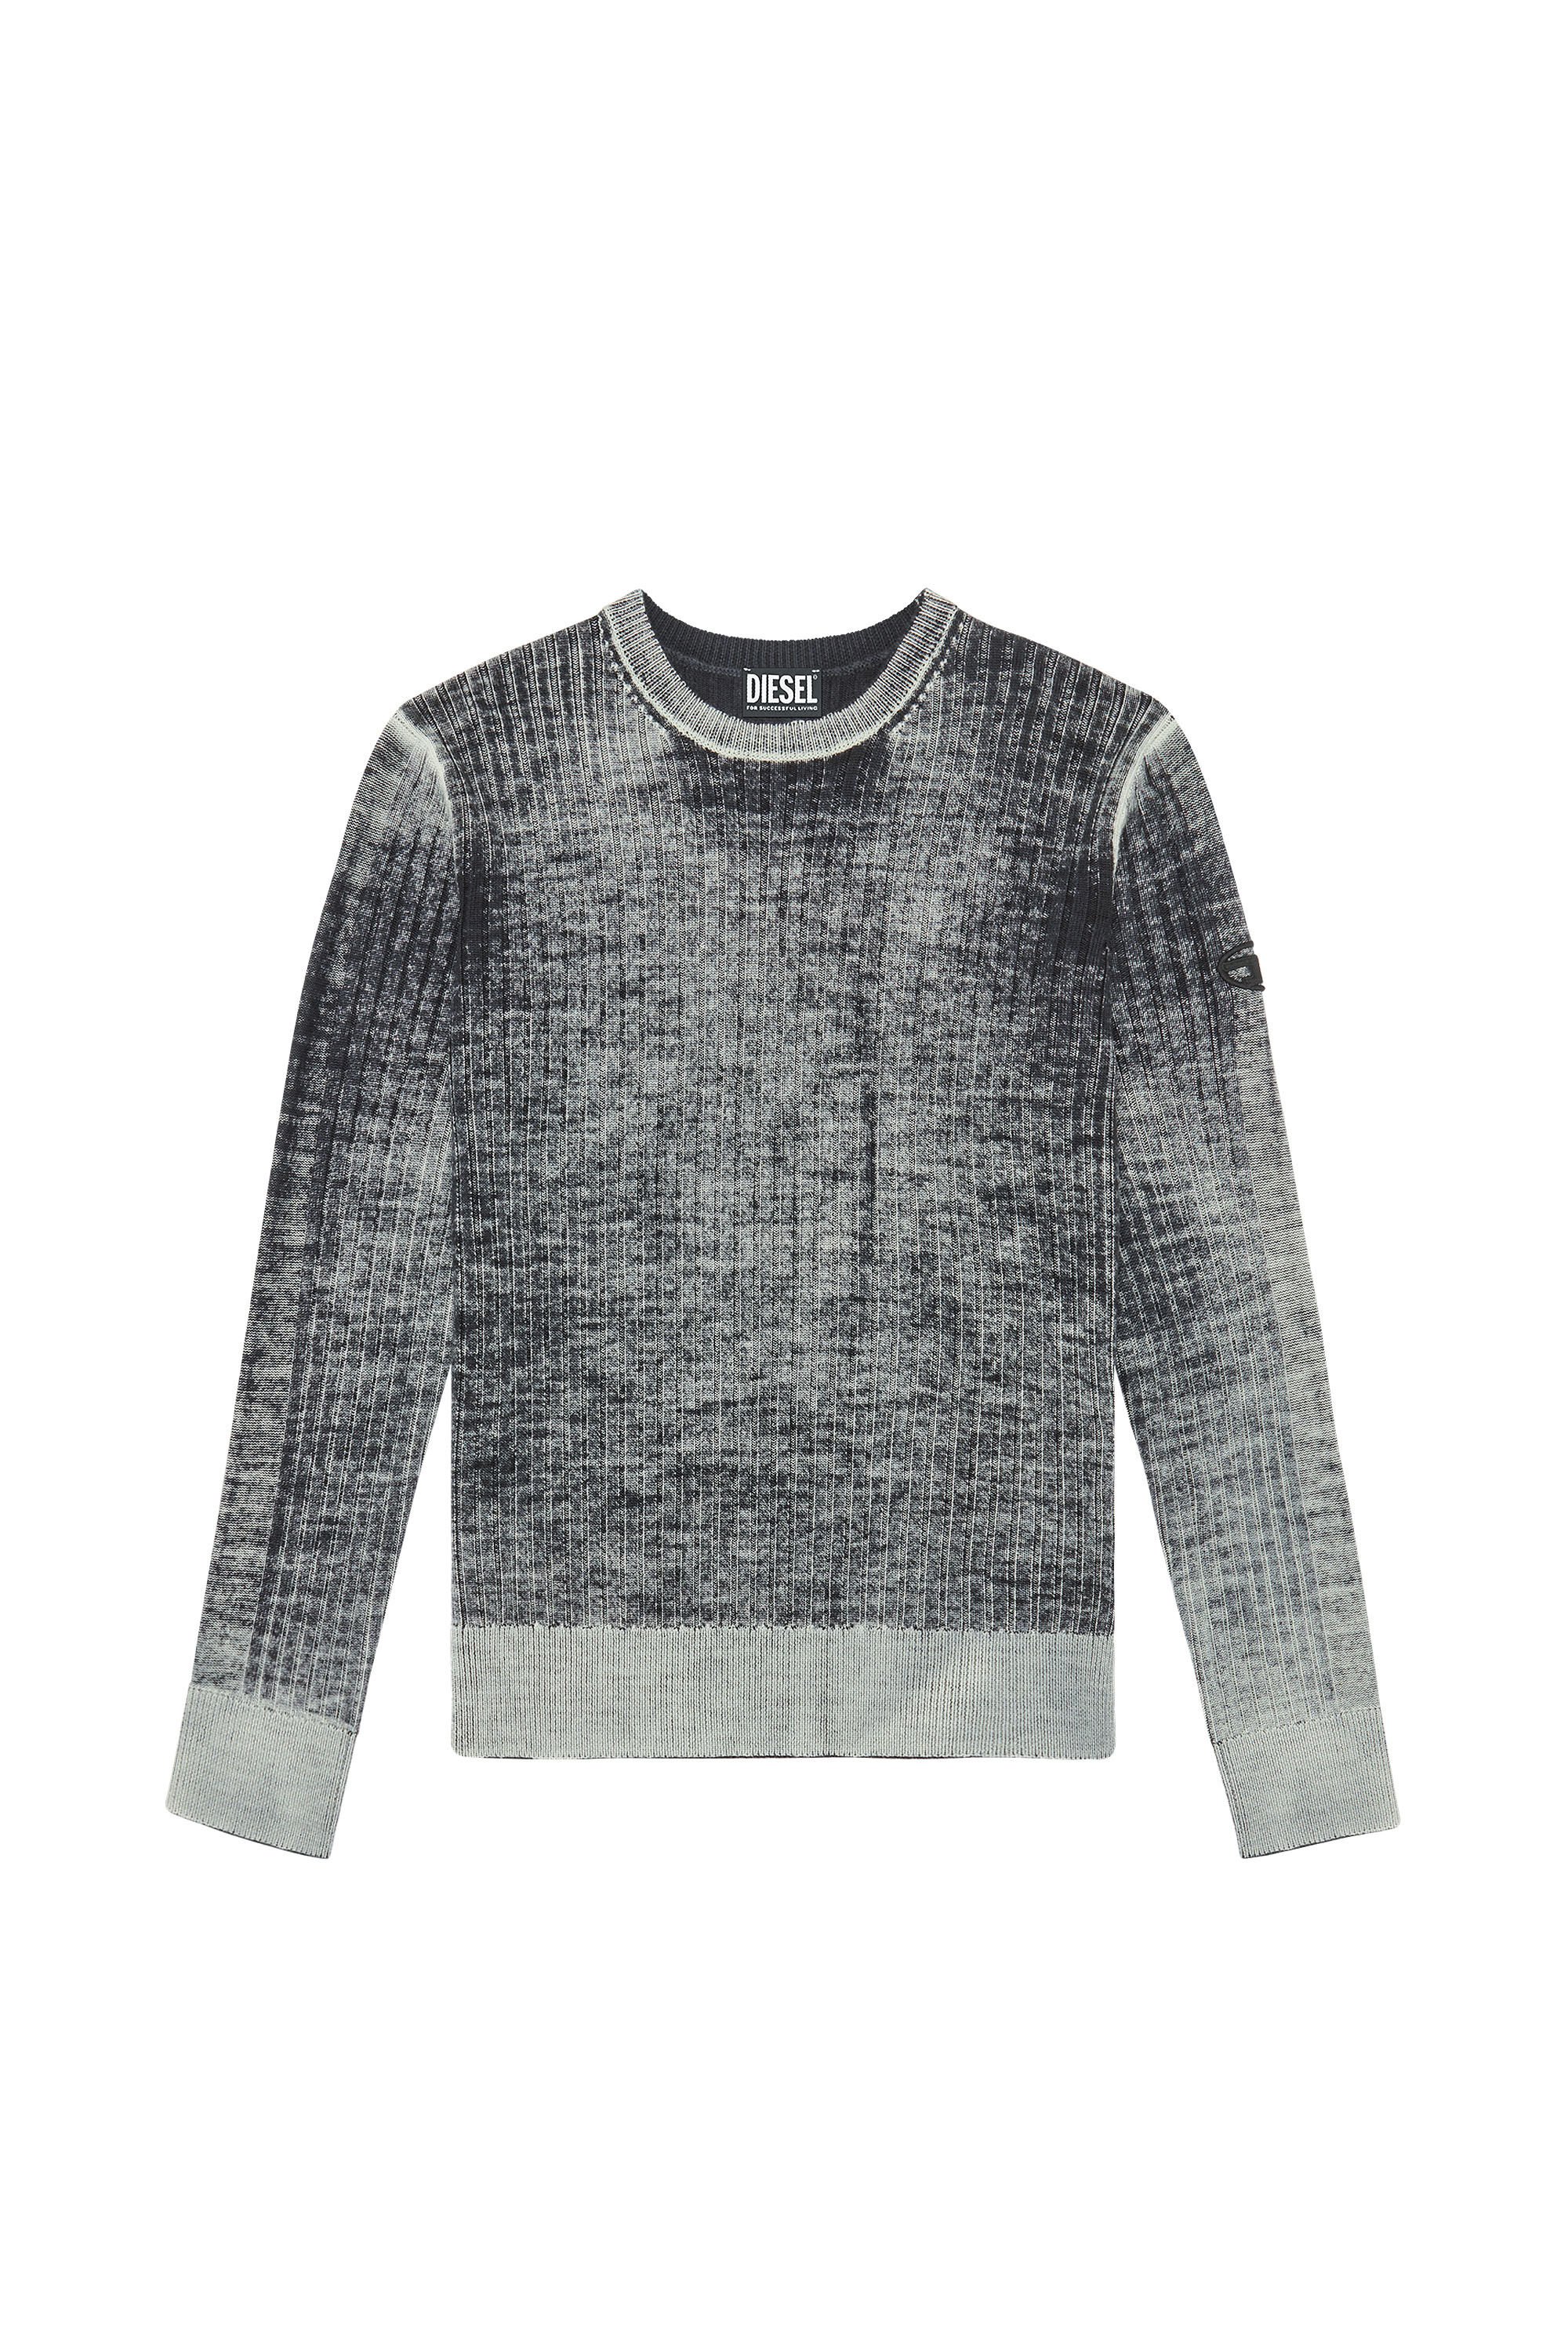 Diesel - K-ANDELERO, Man Printed wool jumper in Grey - Image 2